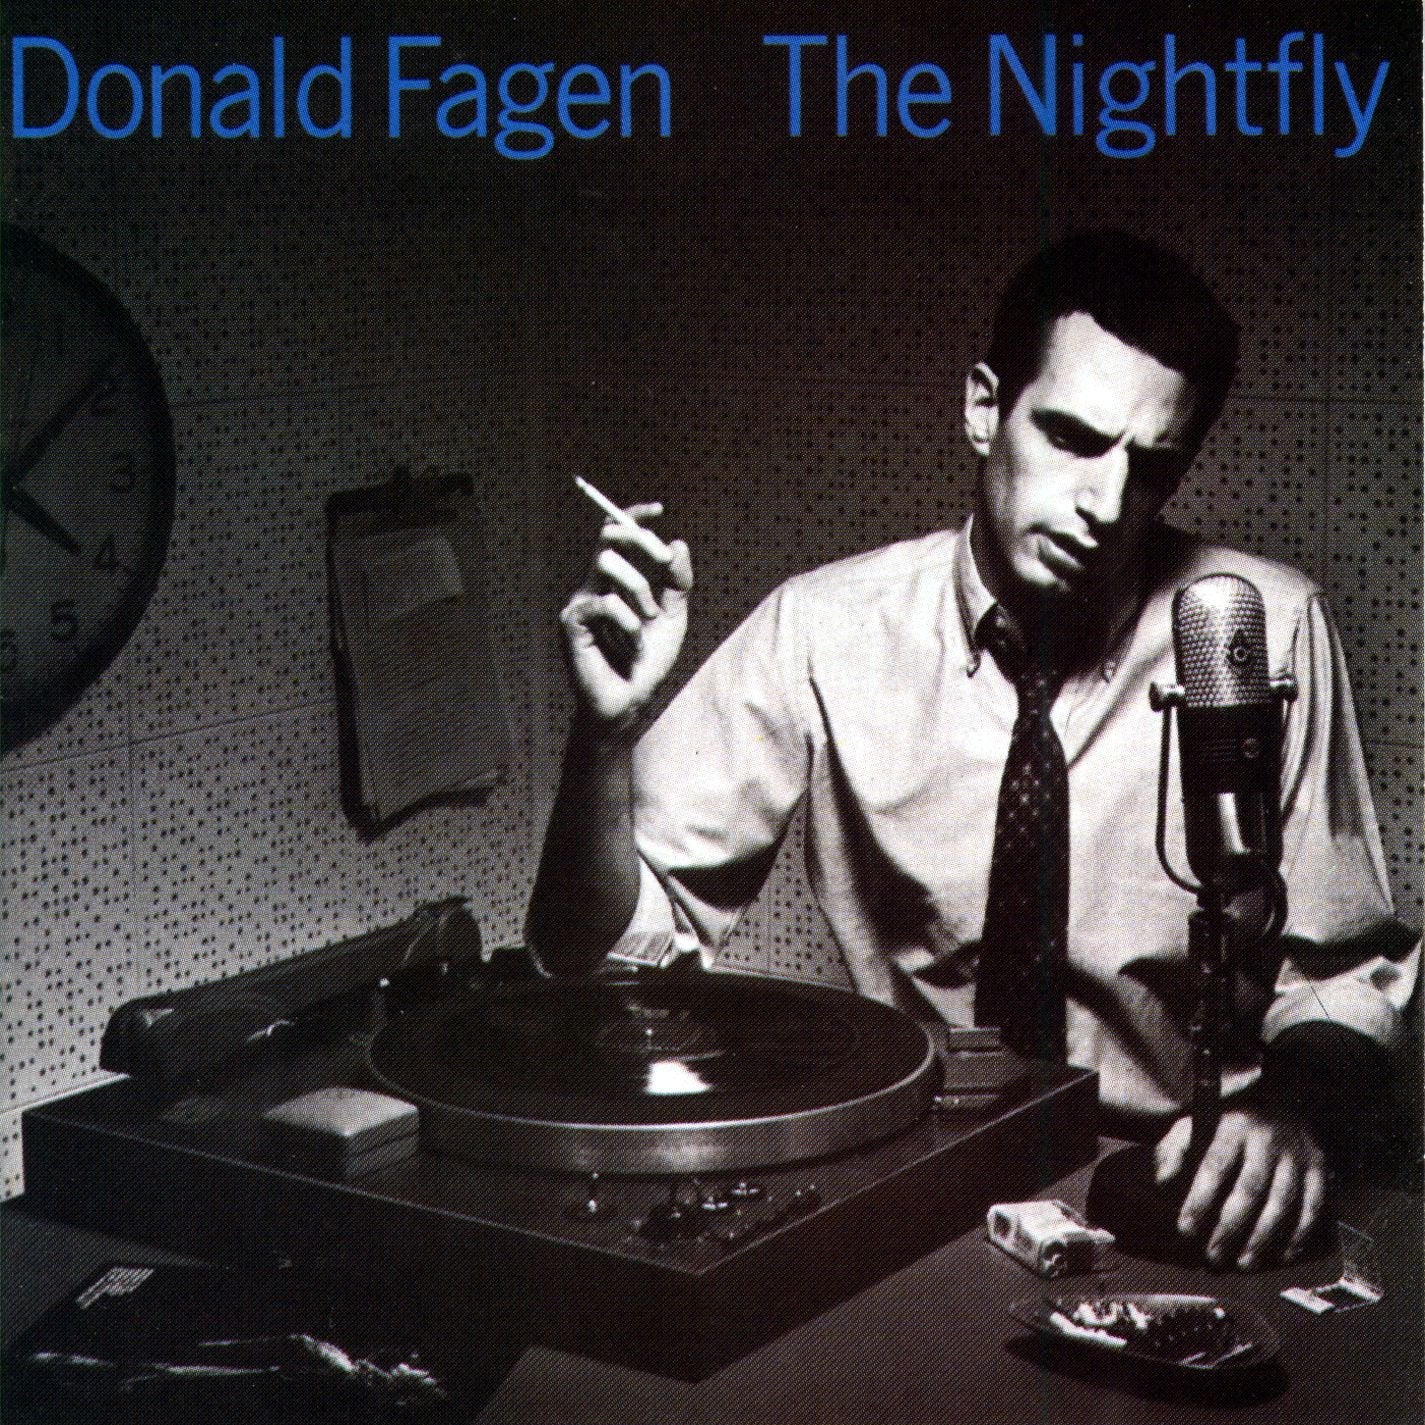 Donald Fagan. "The Nightfly"